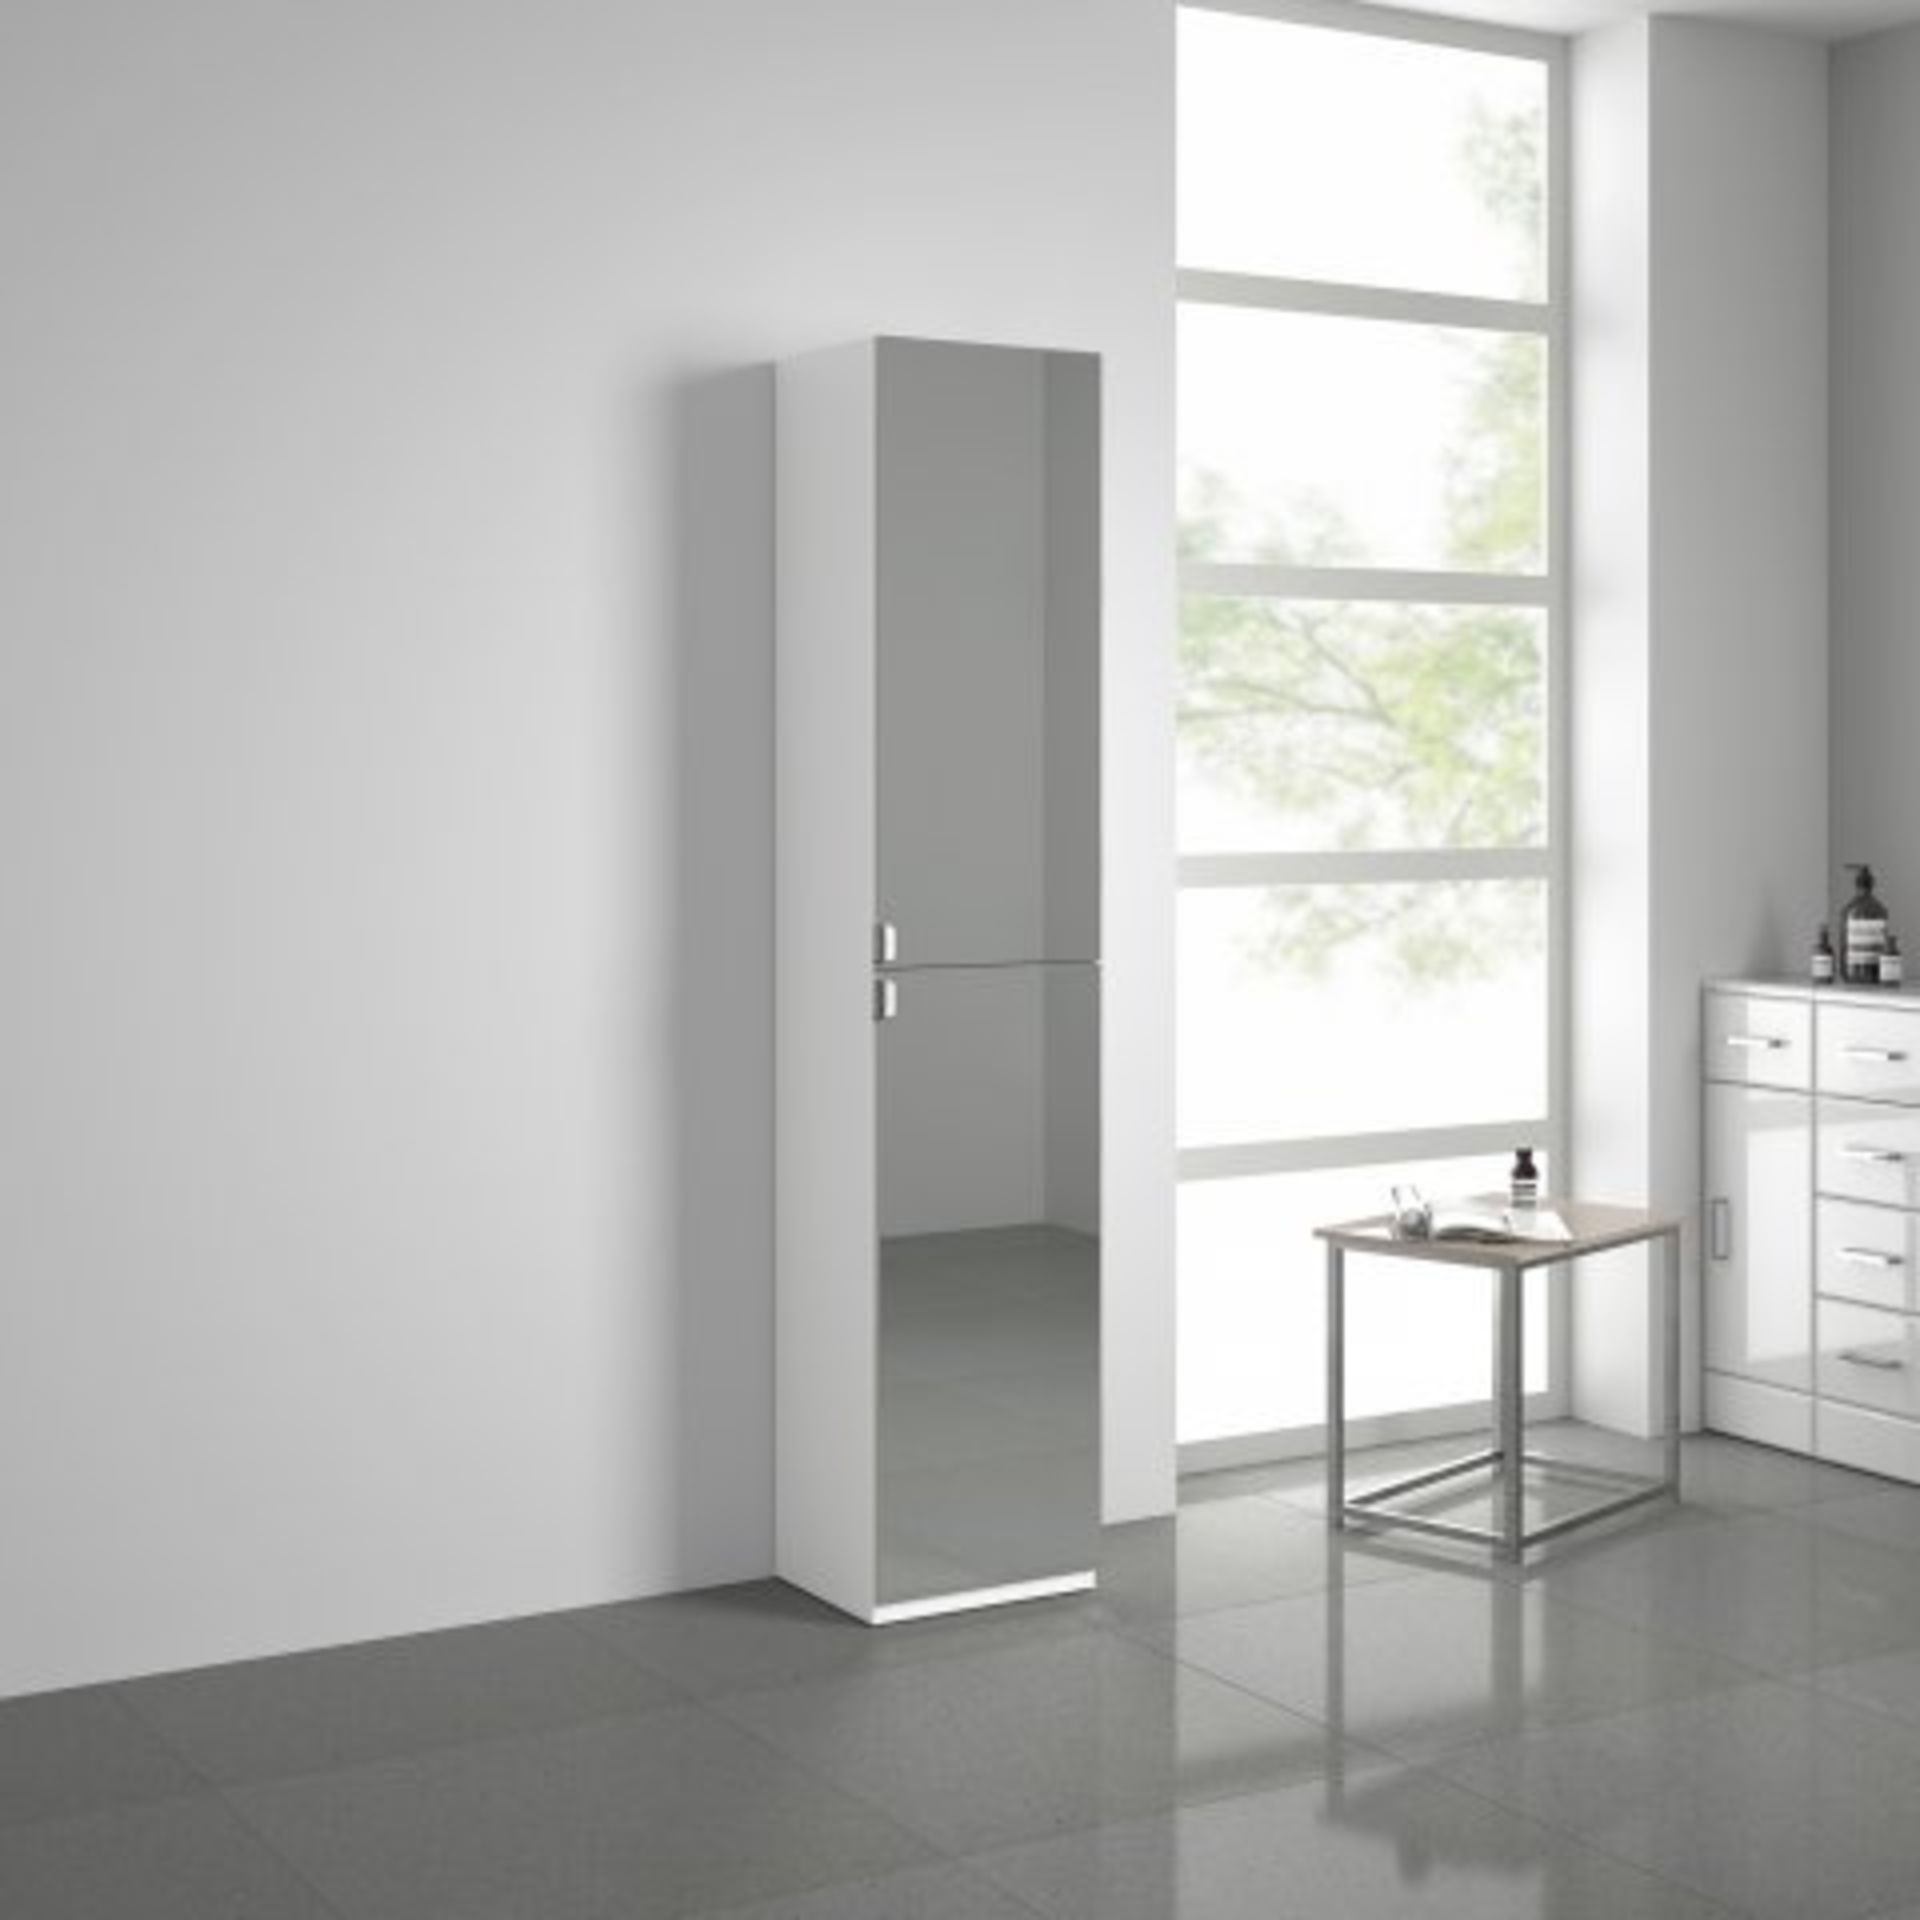 (J51) 1700x350mm Mirrored Door Matte White Tall Storage Cabinet - Floor Standing. RRP £339.99. - Bild 2 aus 3